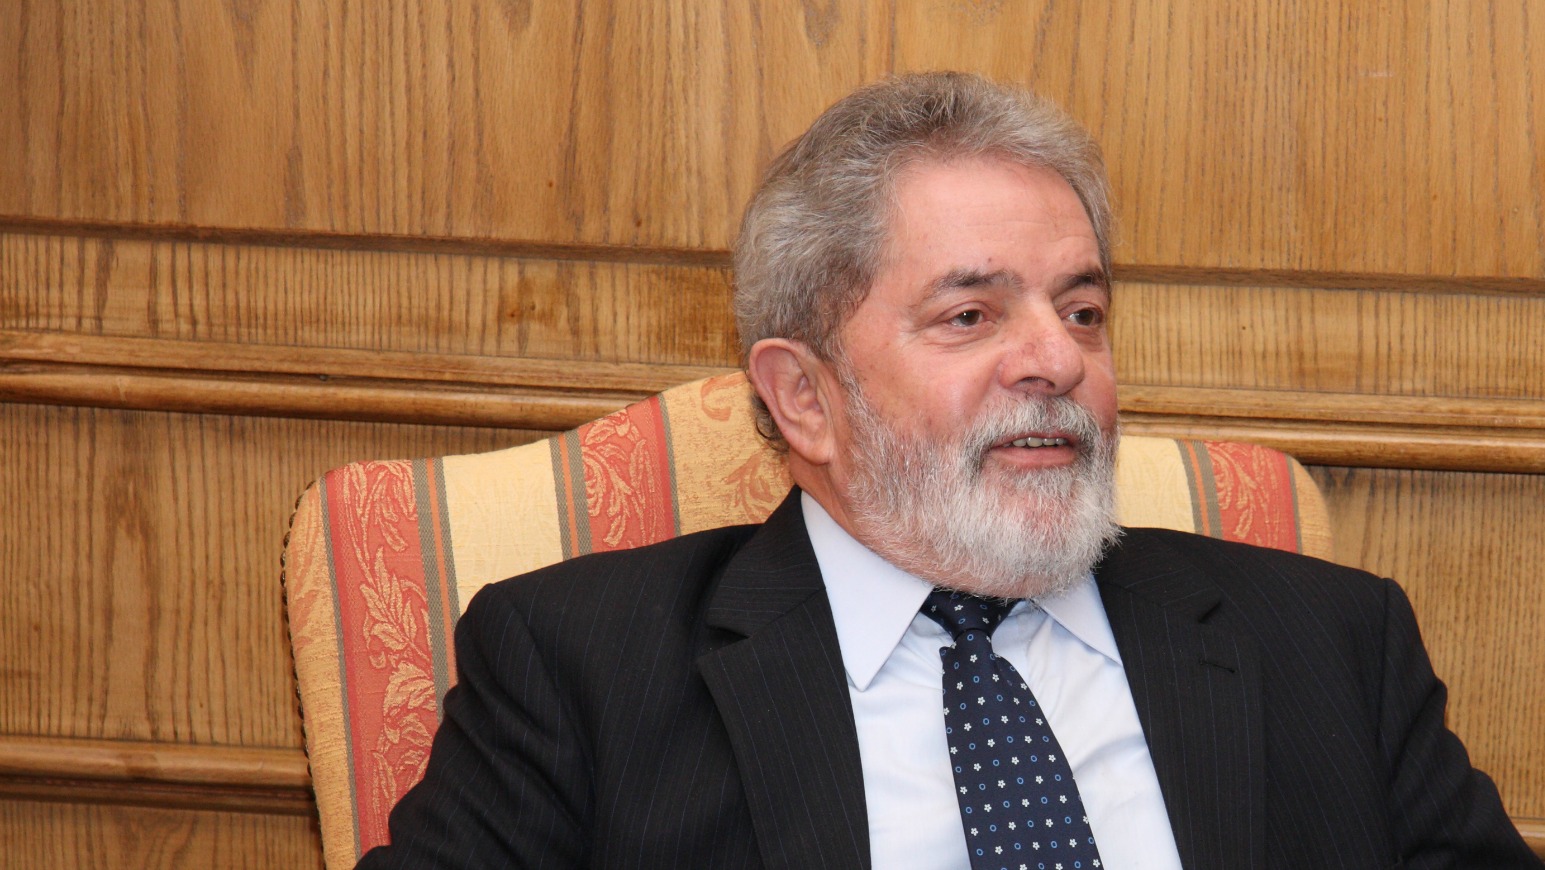 Le président brésilien Luiz Inacio Lula da Silva  (Photo:BCNChile/Flickr/CC BY 2.0)